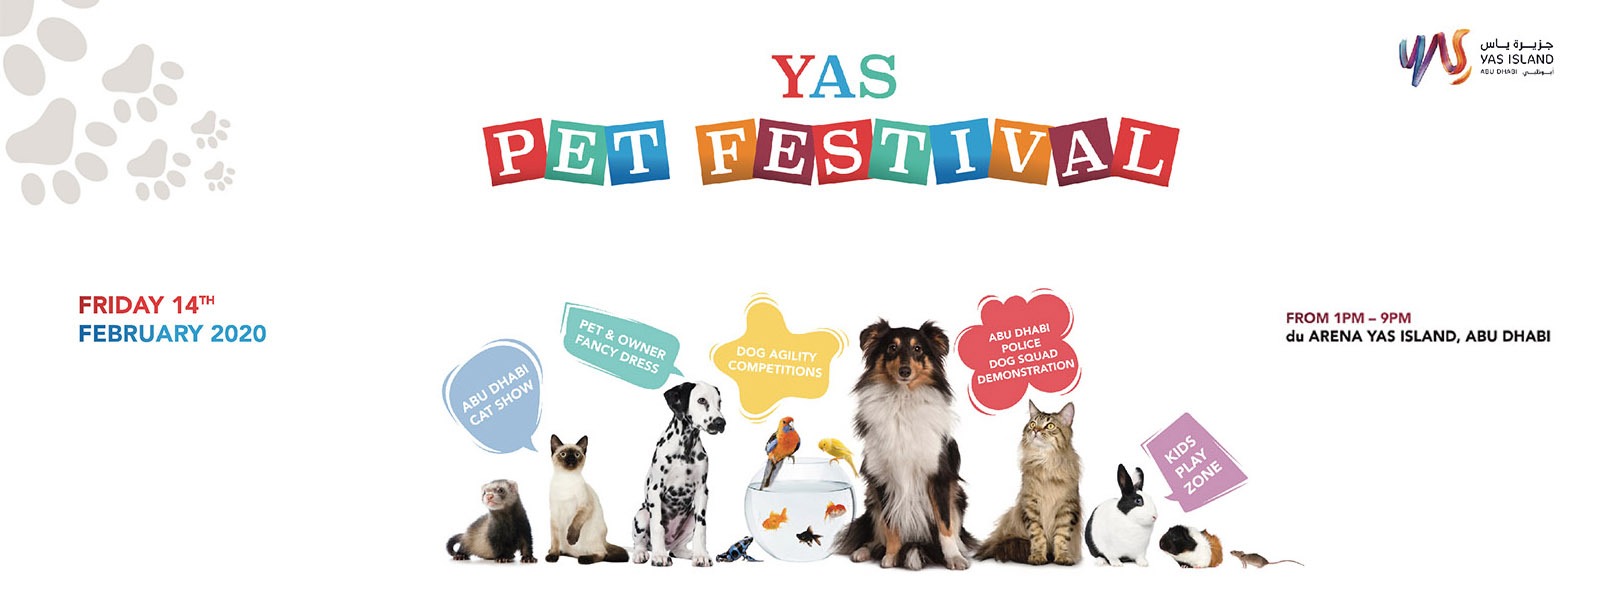 Yas Pet Festival 2020 - Coming Soon in UAE